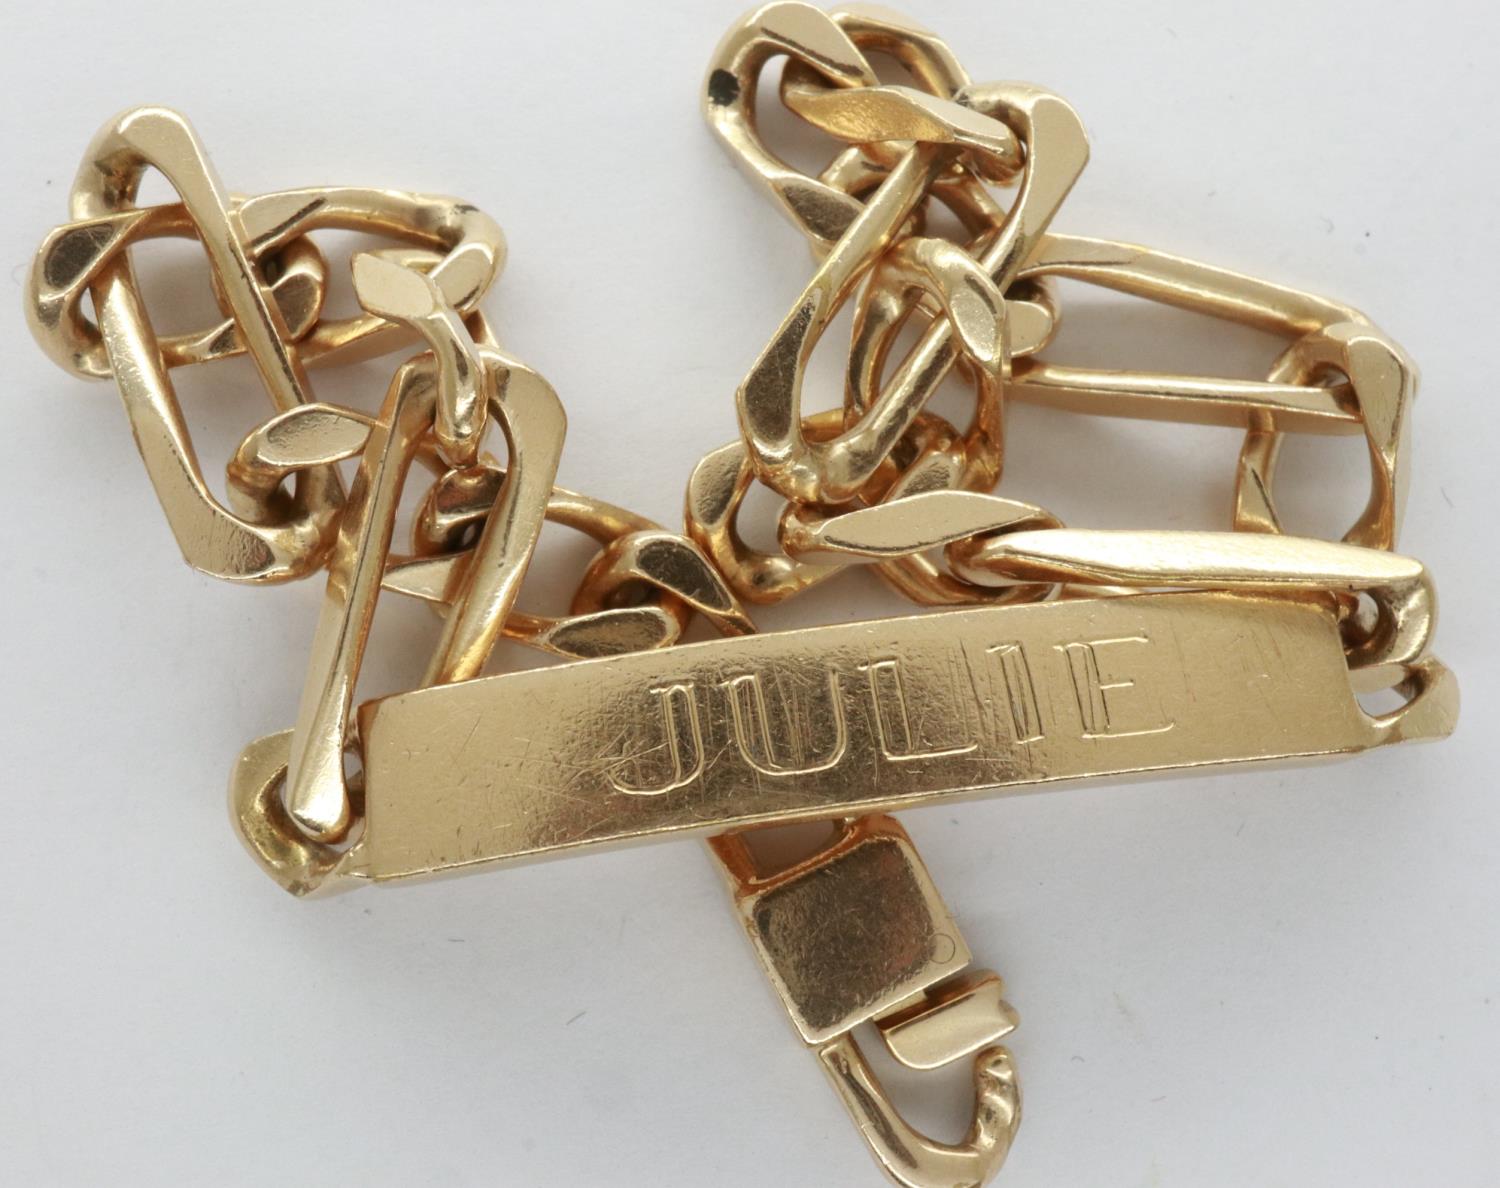 Presumed 9ct gold identity bracelet, inscribed Julie, L: 21 cm, 16.1g. P&P Group 1 (£14+VAT for